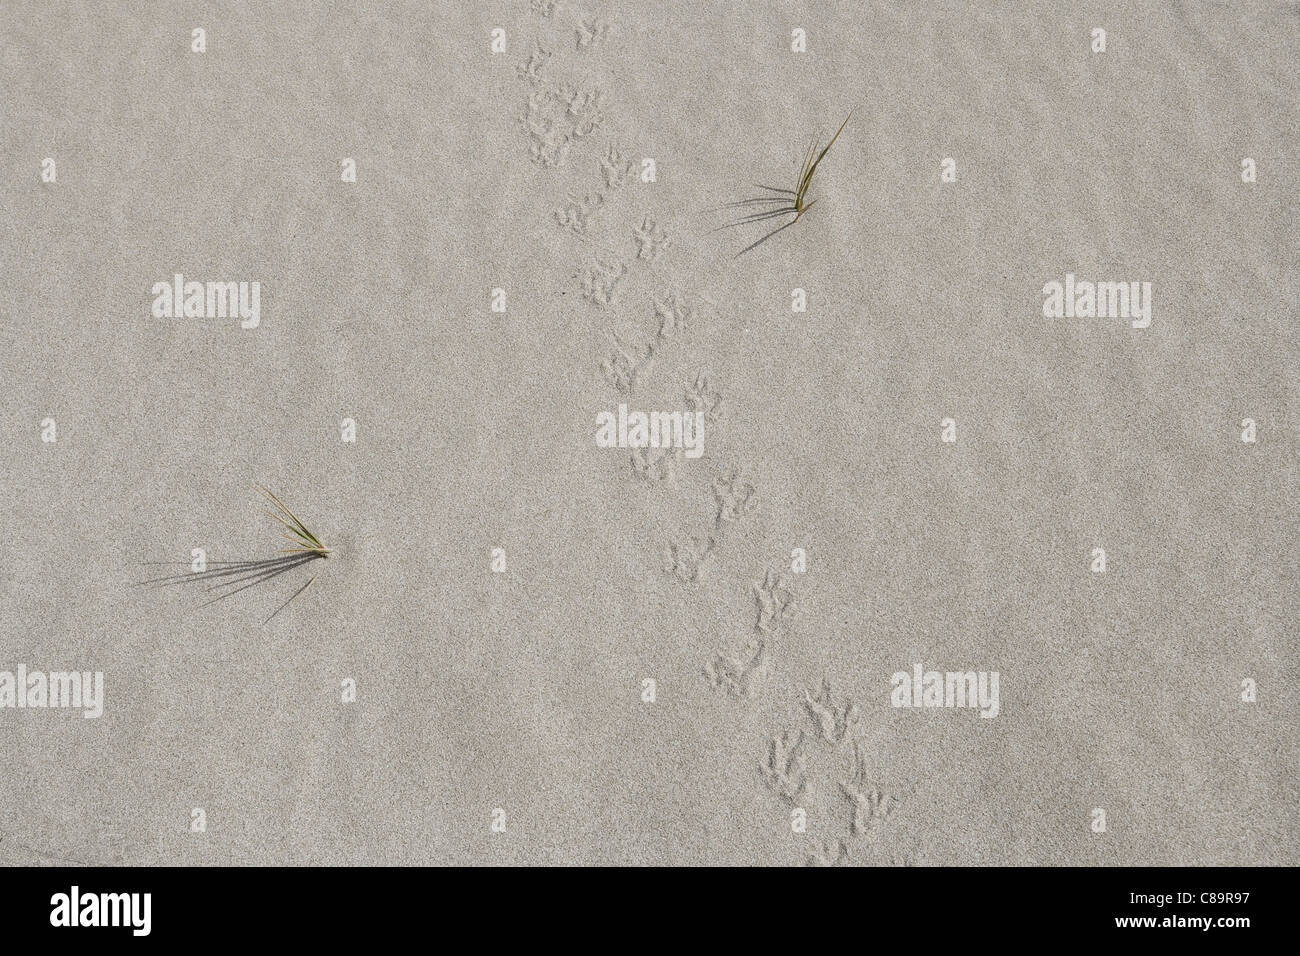 La Turquie, Izmir, vue d'oiseau, des marques de griffes sur le sable Banque D'Images